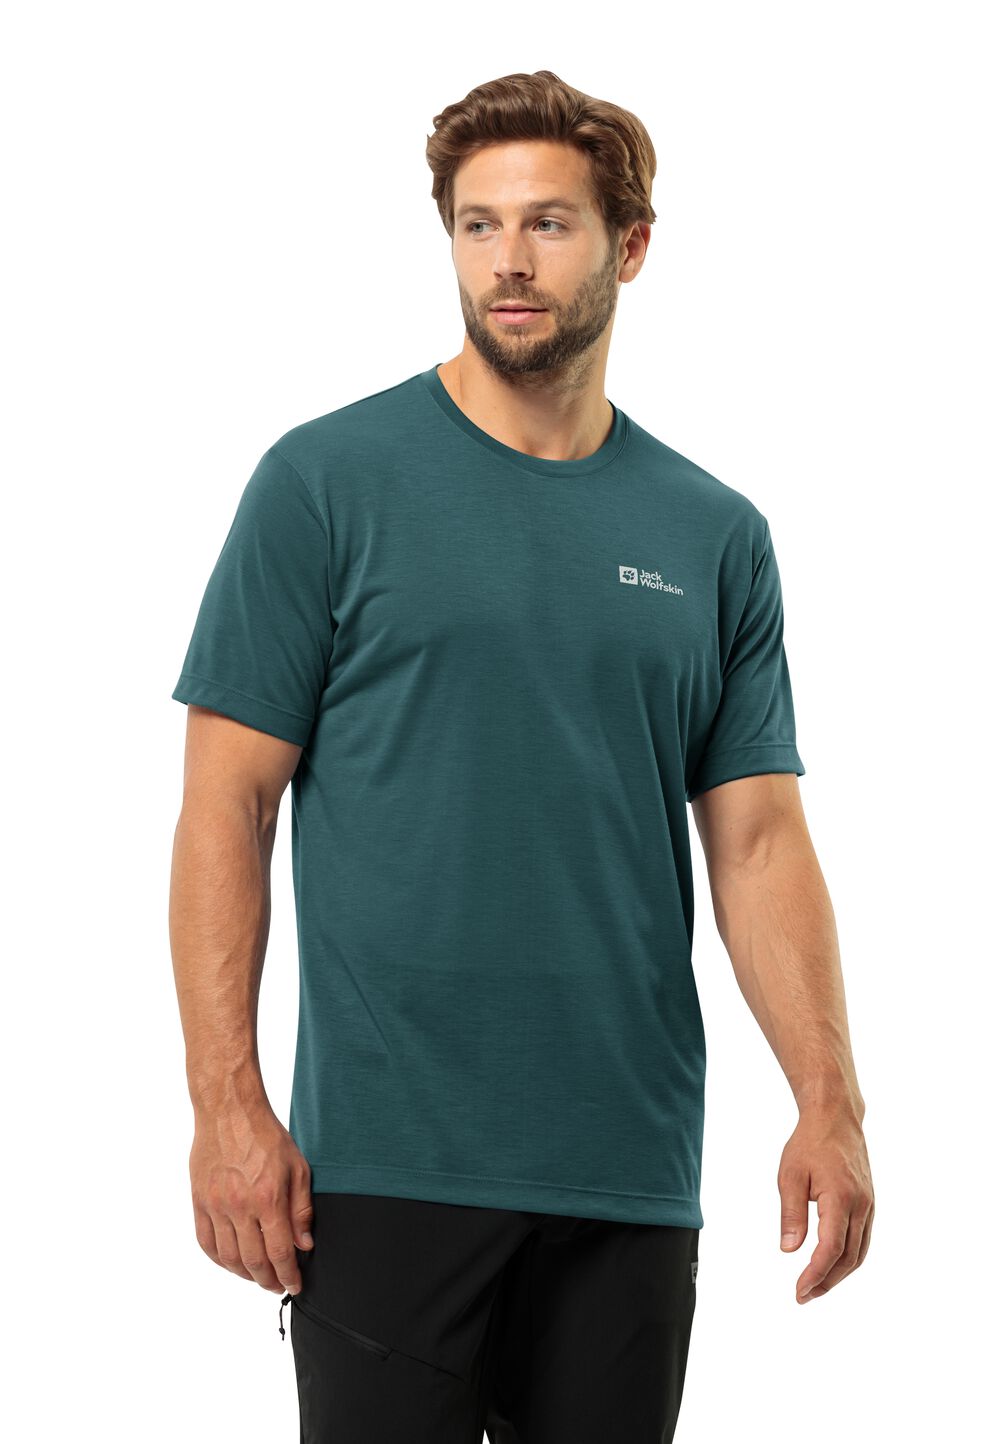 Jack Wolfskin Vonnan S S T-Shirt Men Functioneel shirt Heren M emerald